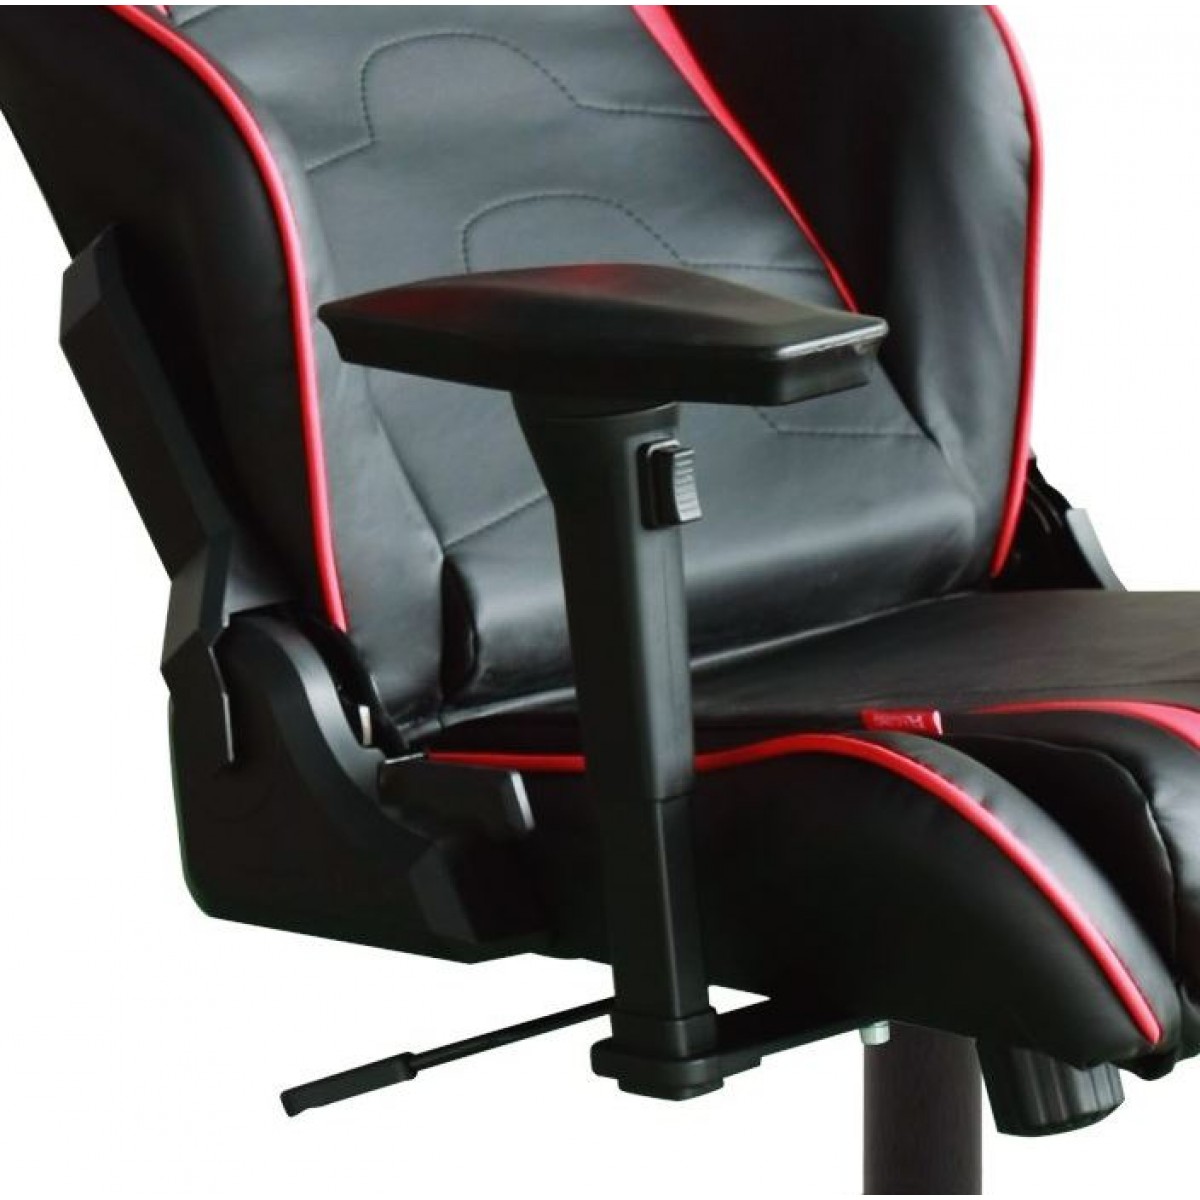 Cadeira R-Series OH/RF8/NR Preto/Vermelho - DXRacer